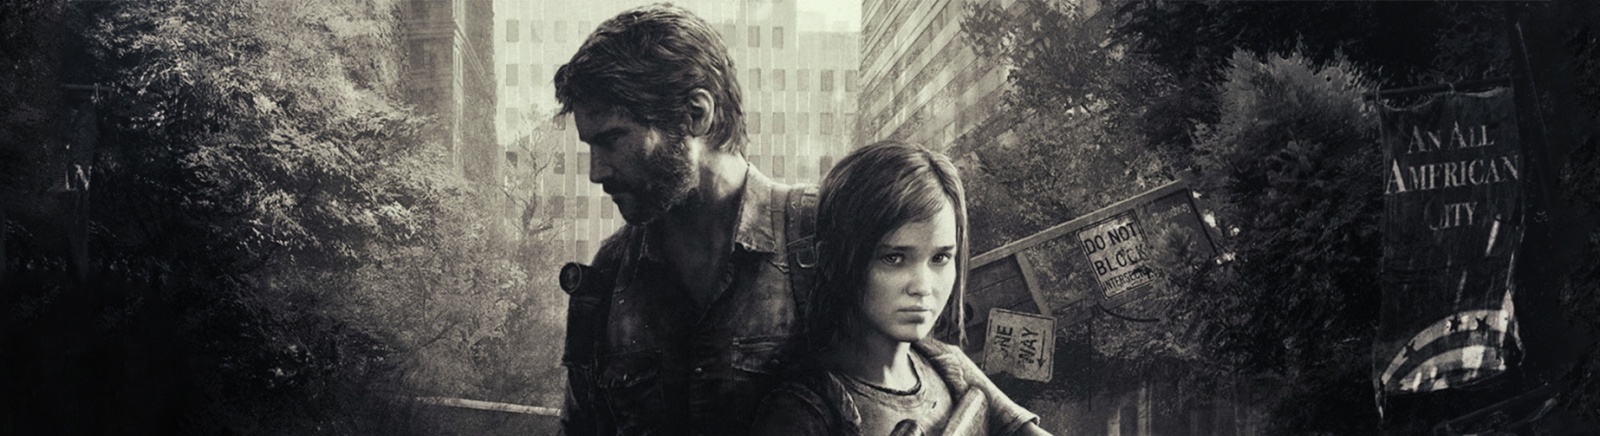 Дата выхода The Last of Us: Remastered  на PS4 в России и во всем мире